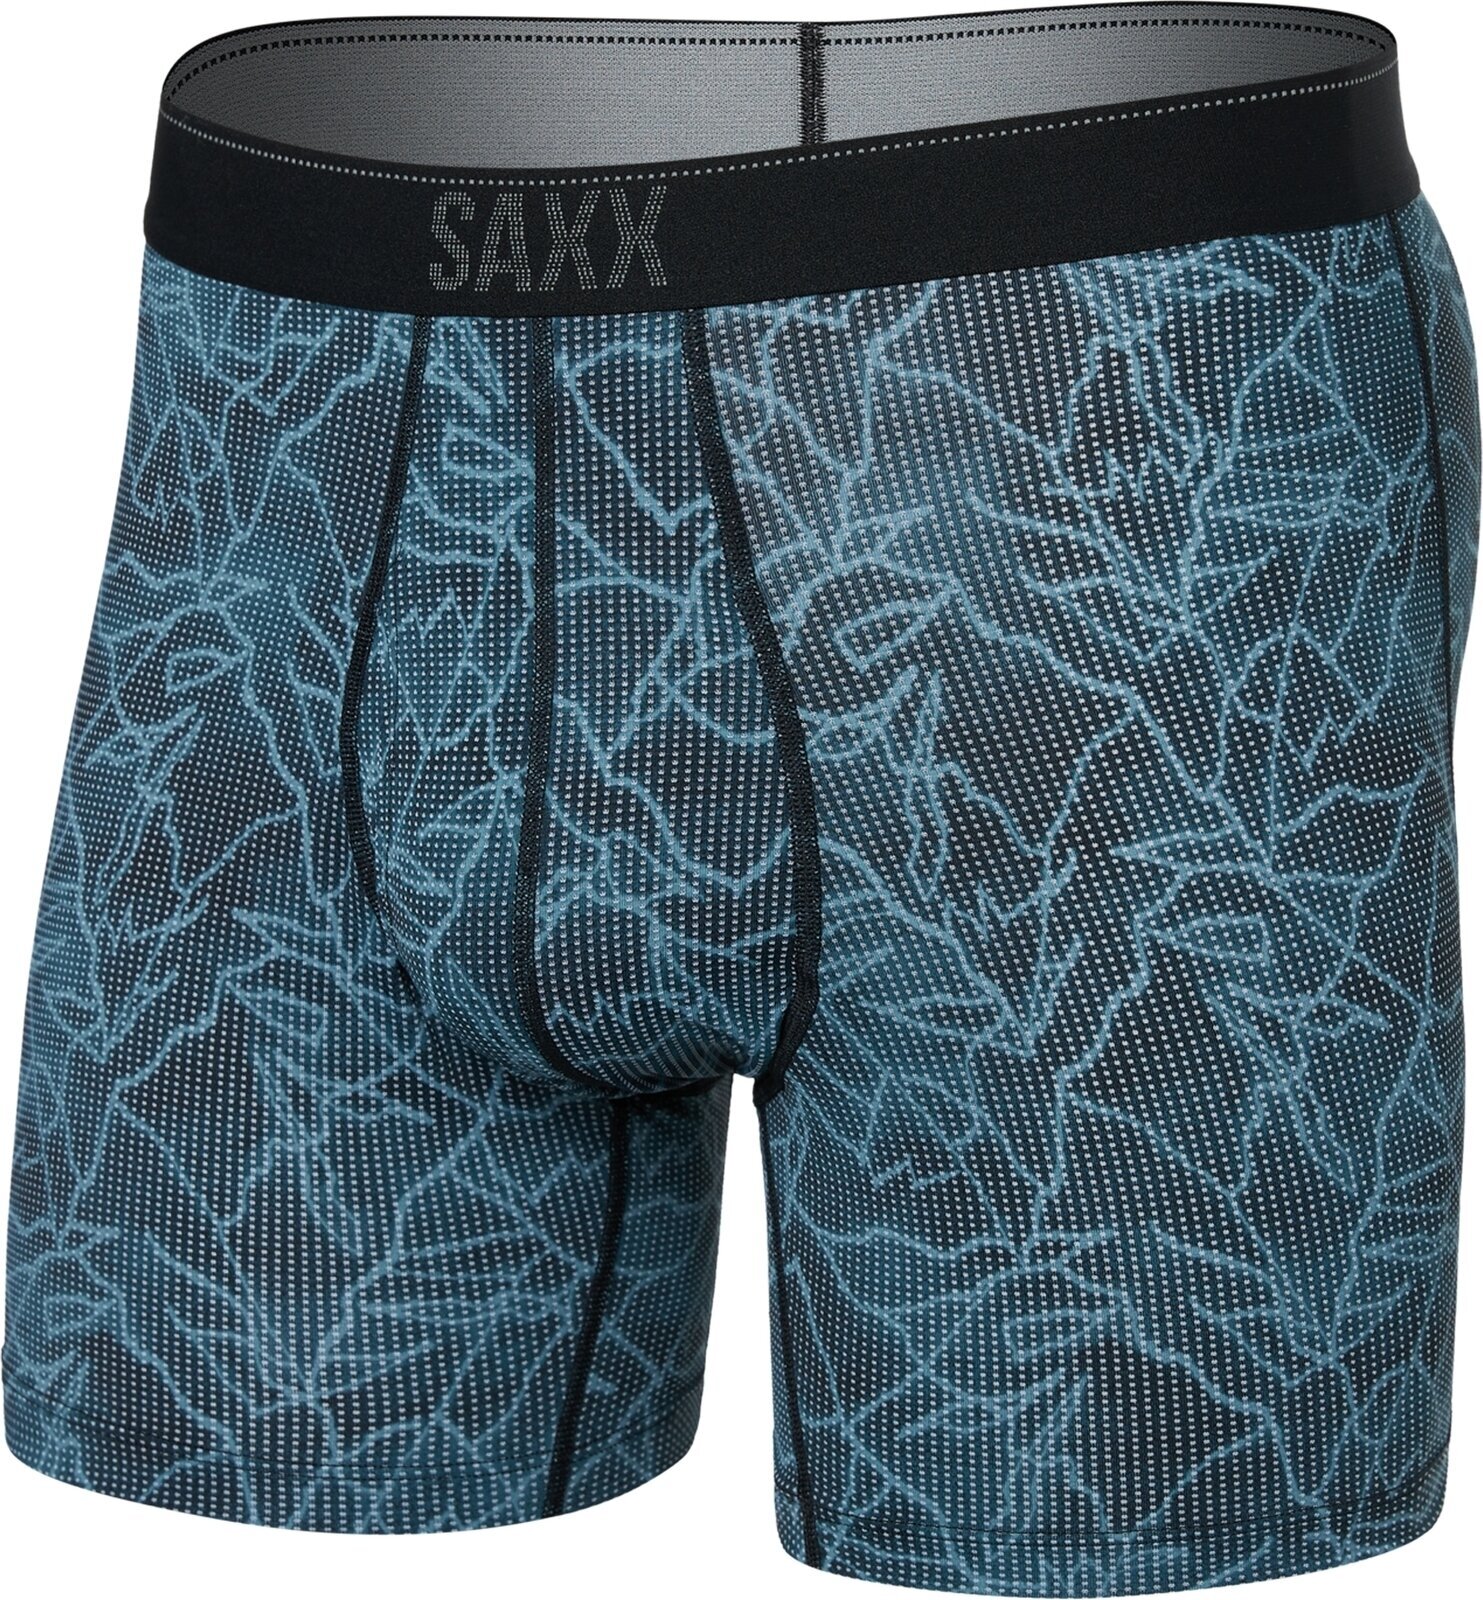 Fitness Underwear SAXX Quest Boxer Brief Mountain/Black S Fitness Underwear